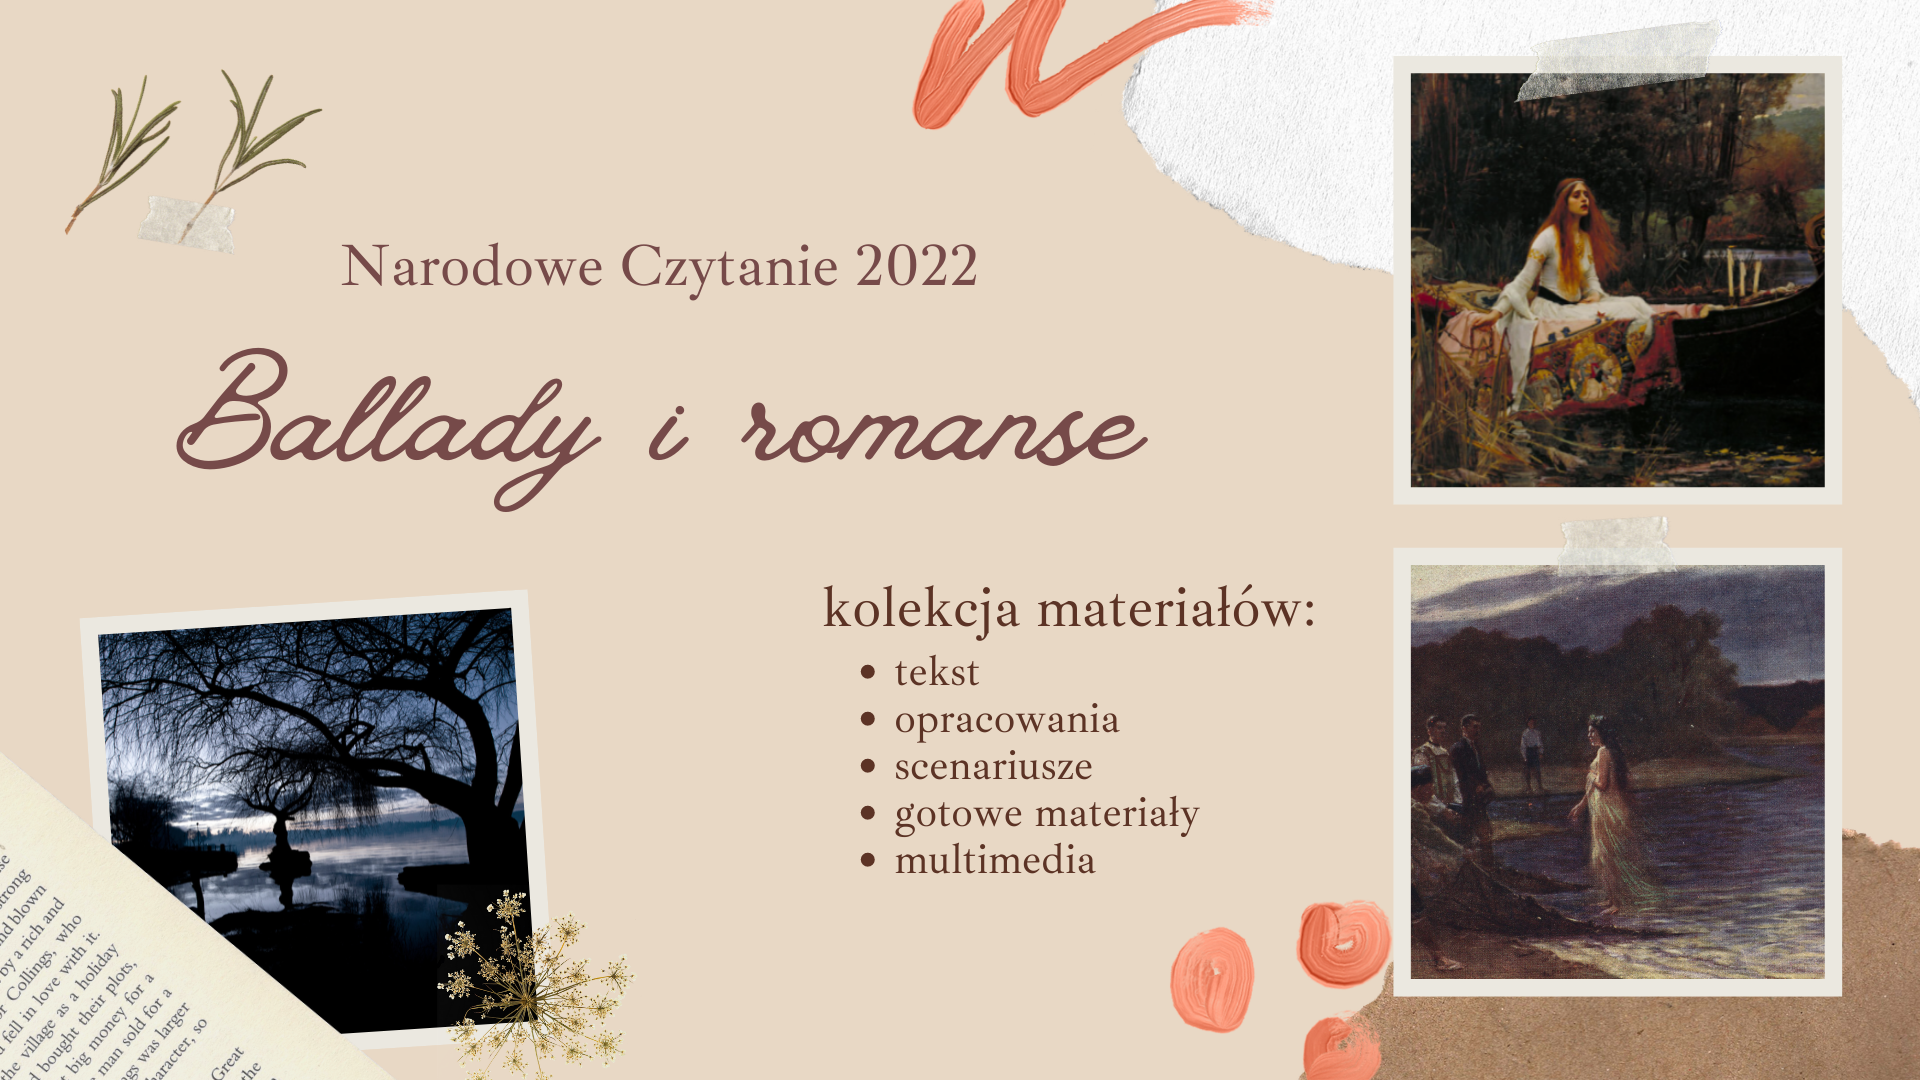 Narodowe Czytanie 2022 - Ballady i romanse: kolekcja materiałów multimedialnych